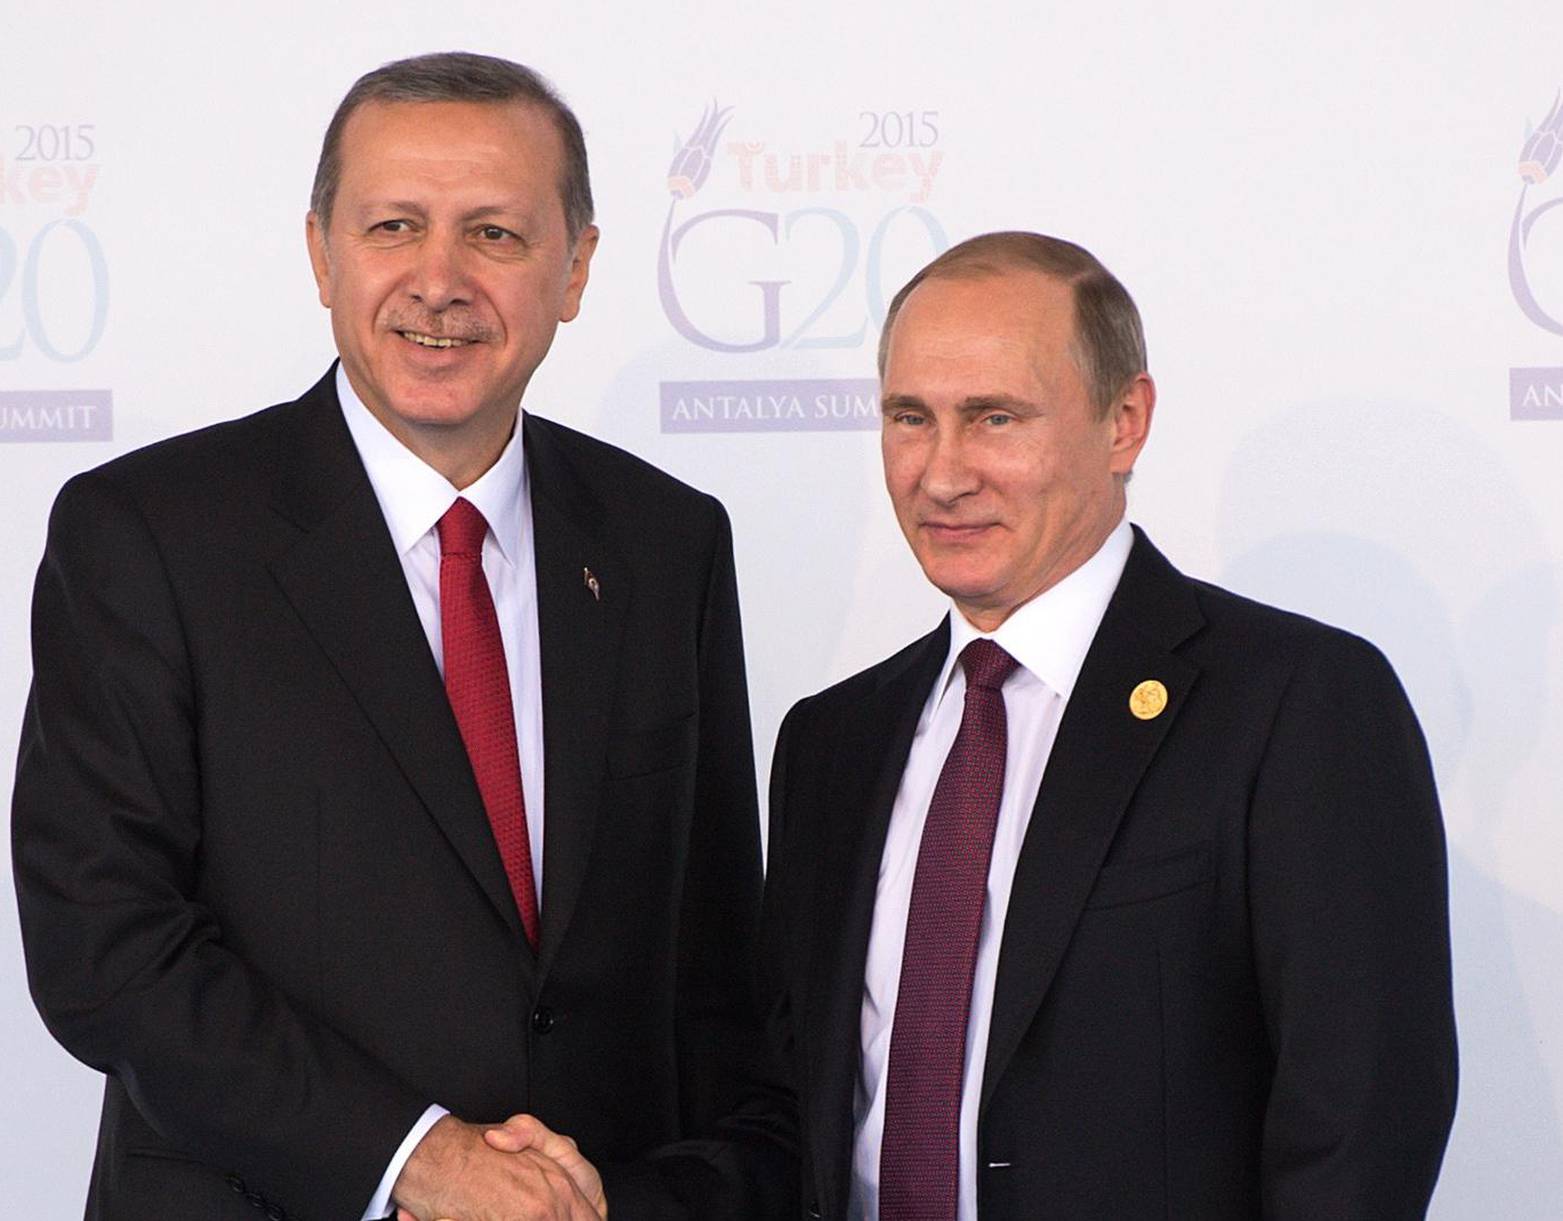 G20 Summit in Turkey